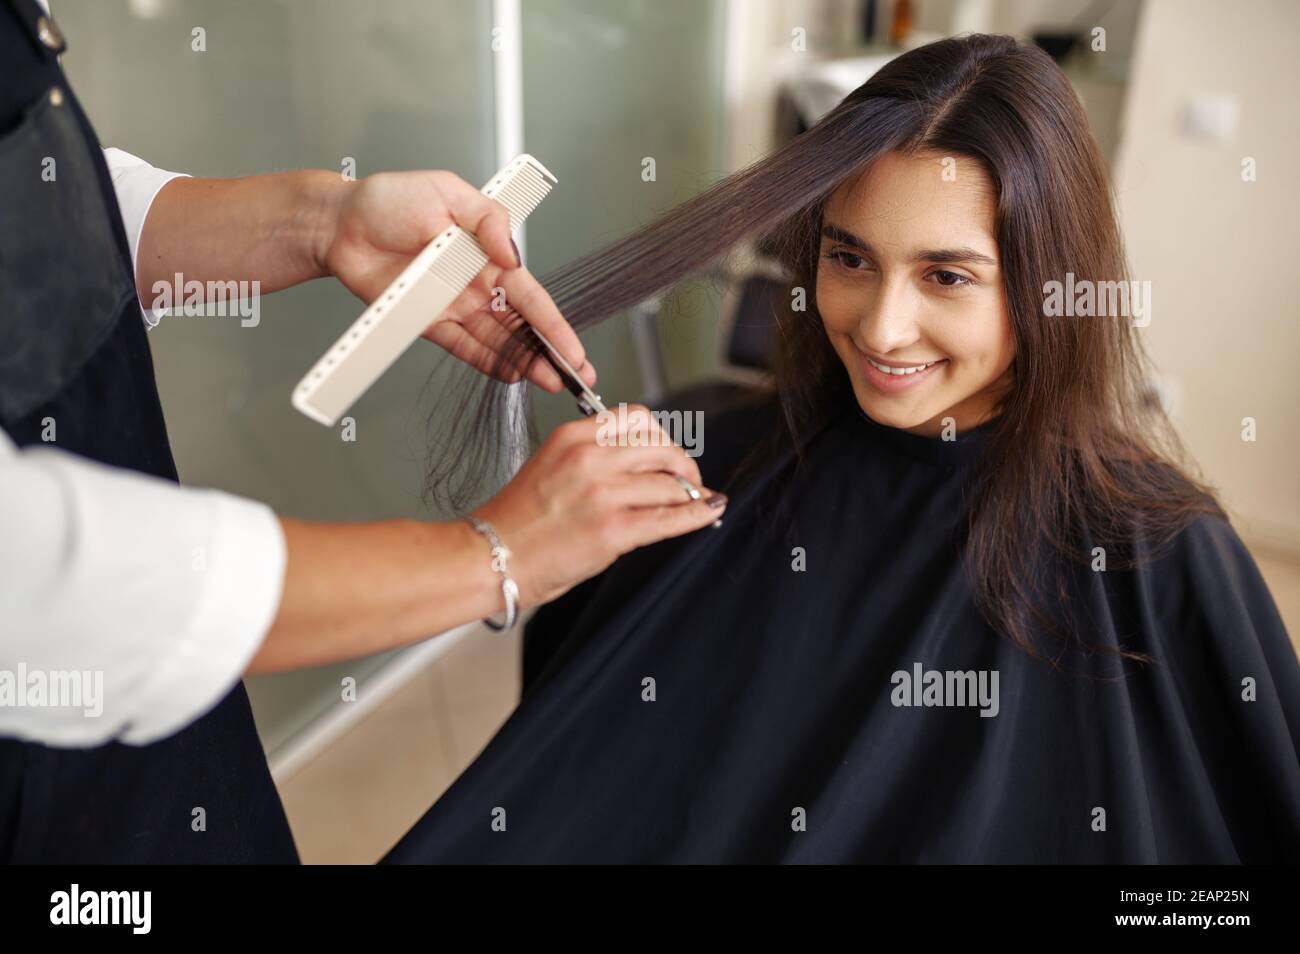 Friseur mit Schere schneidet Frauenhaare Stockfoto